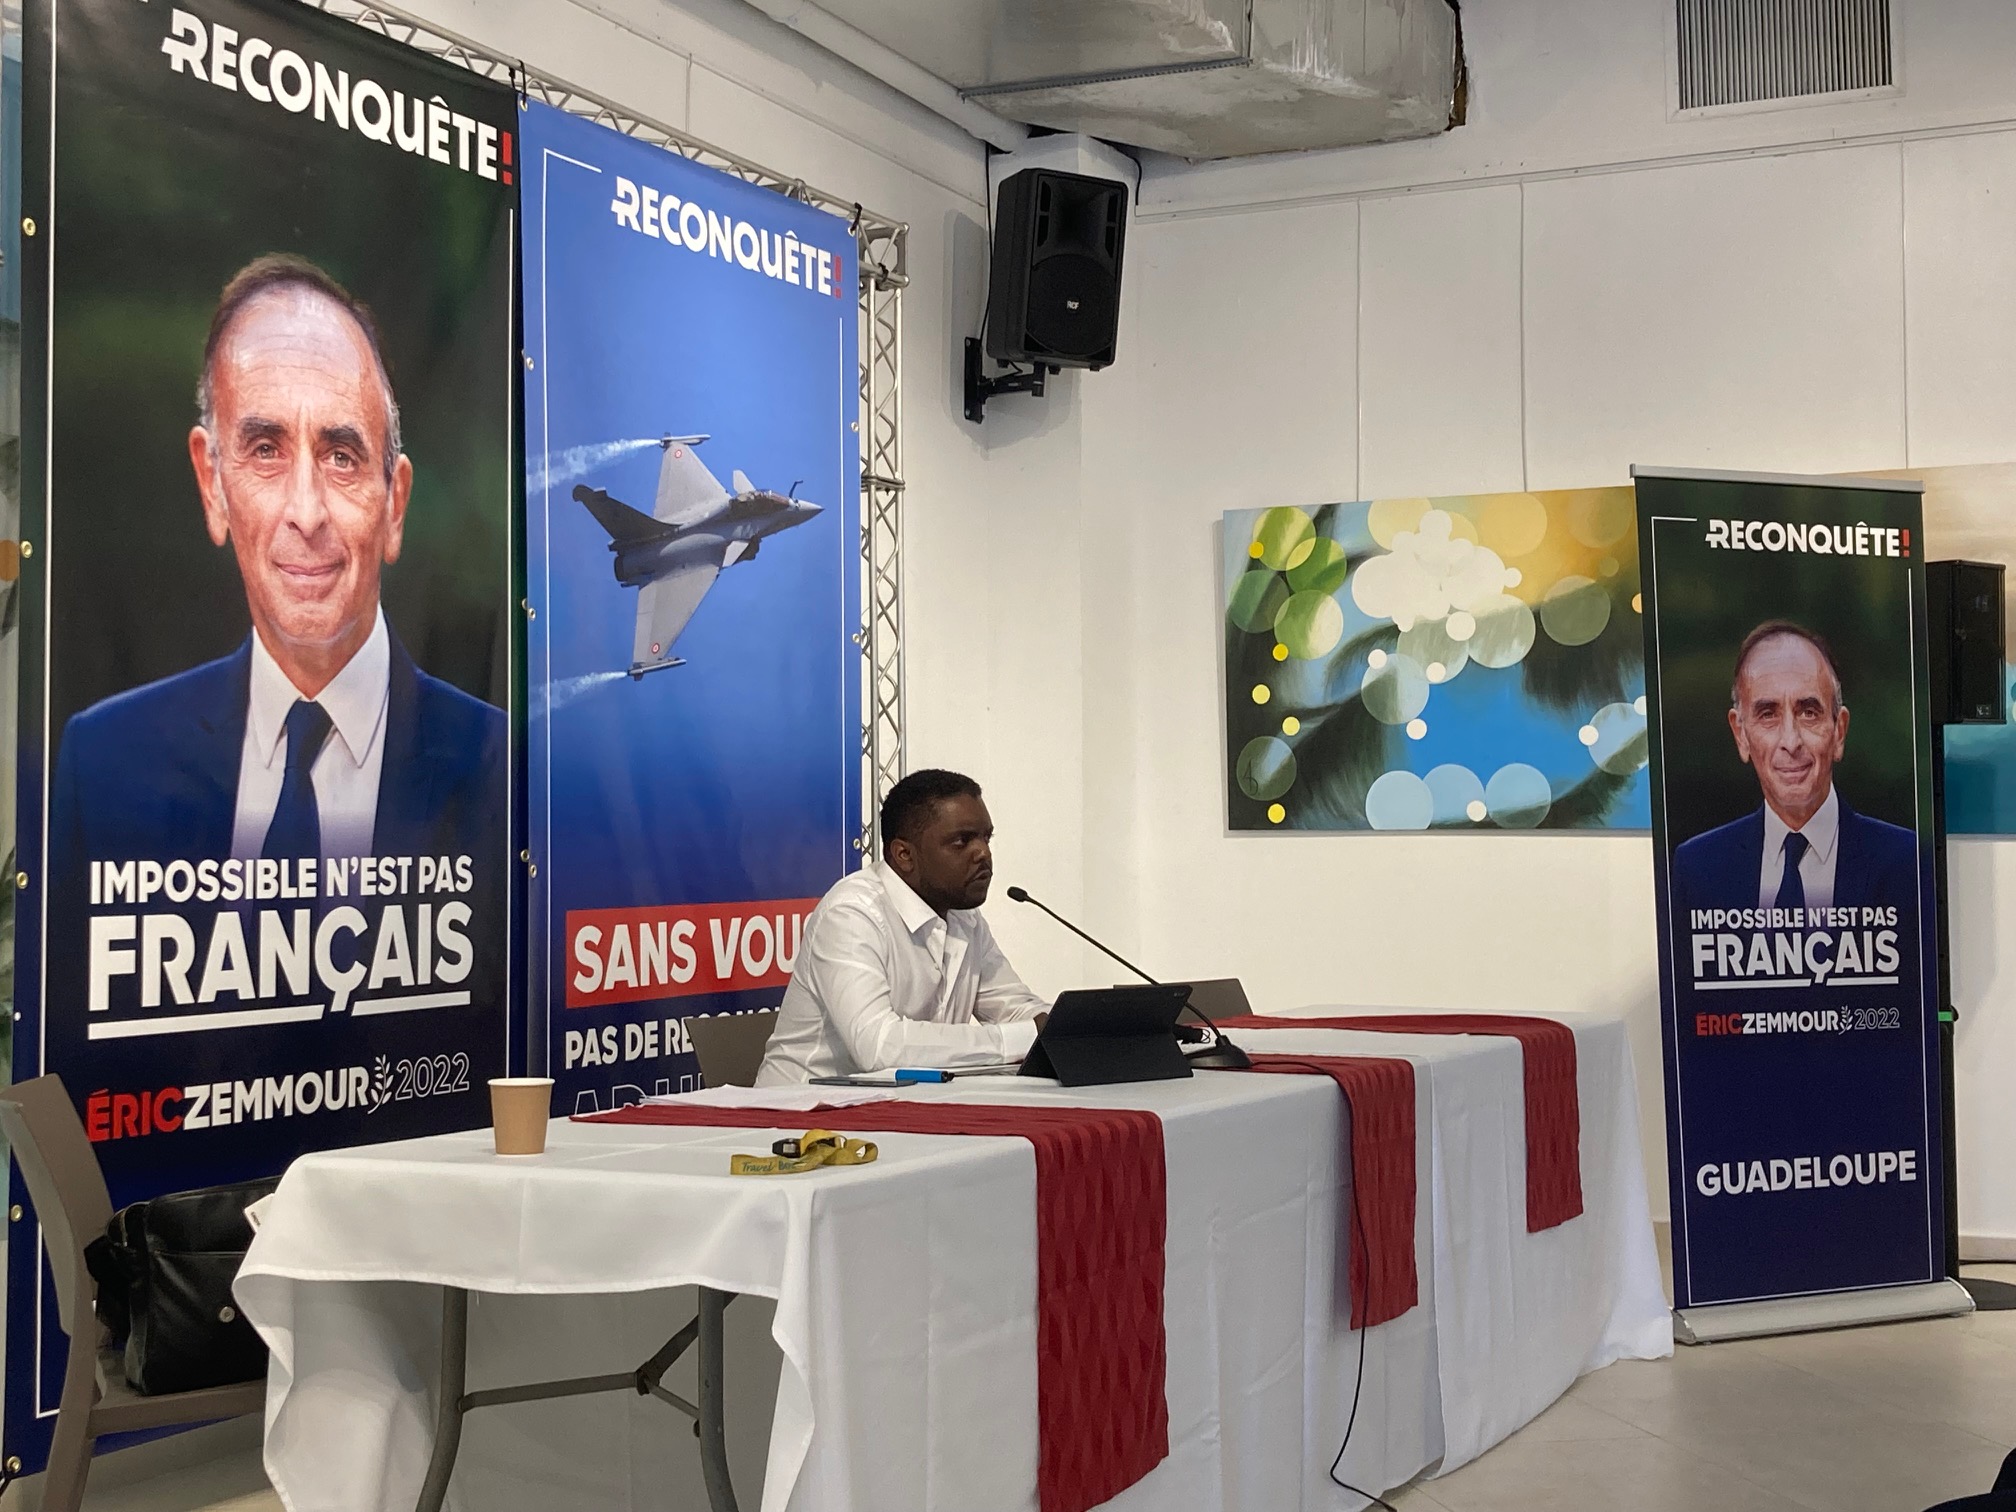     Le parti "Reconquête" d'Eric Zemmour lance sa délégation Guadeloupe

